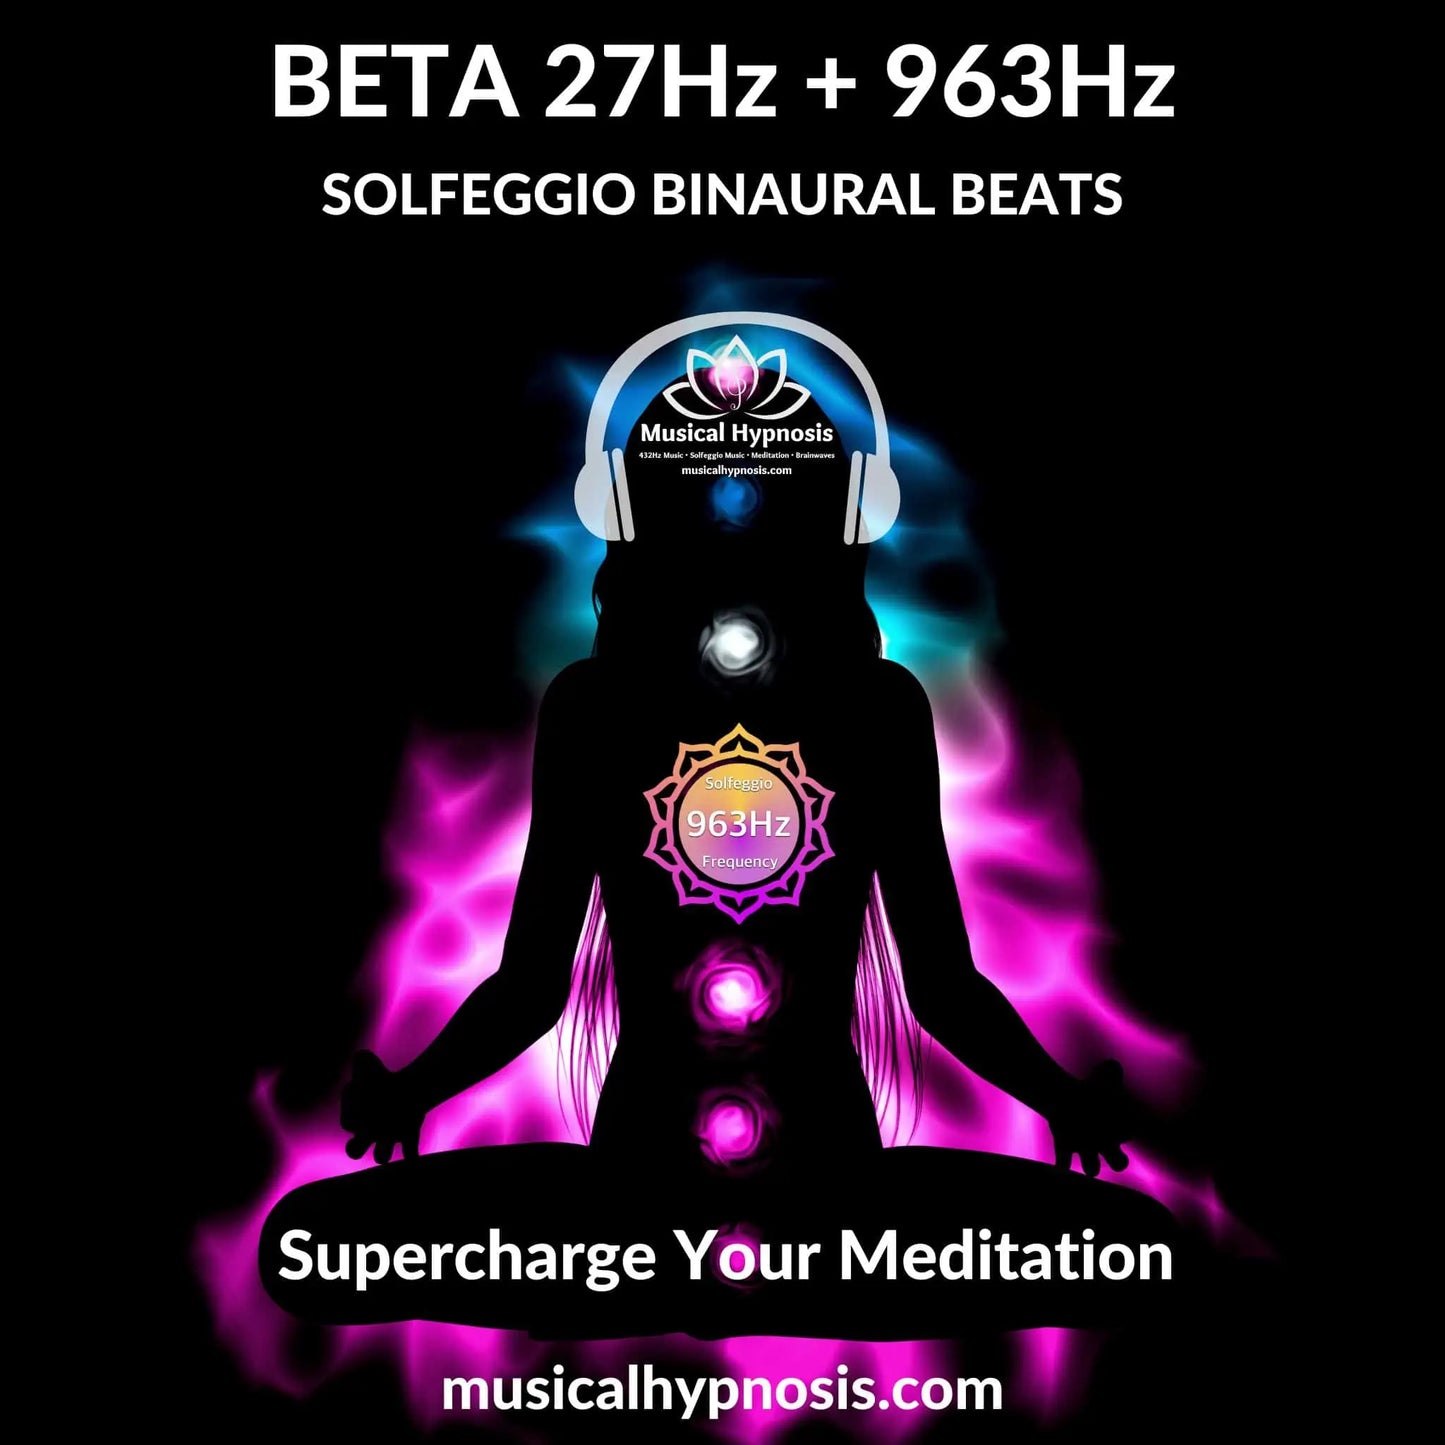 Beta 27Hz and 963Hz Solfeggio Binaural Beats | 30 minutes